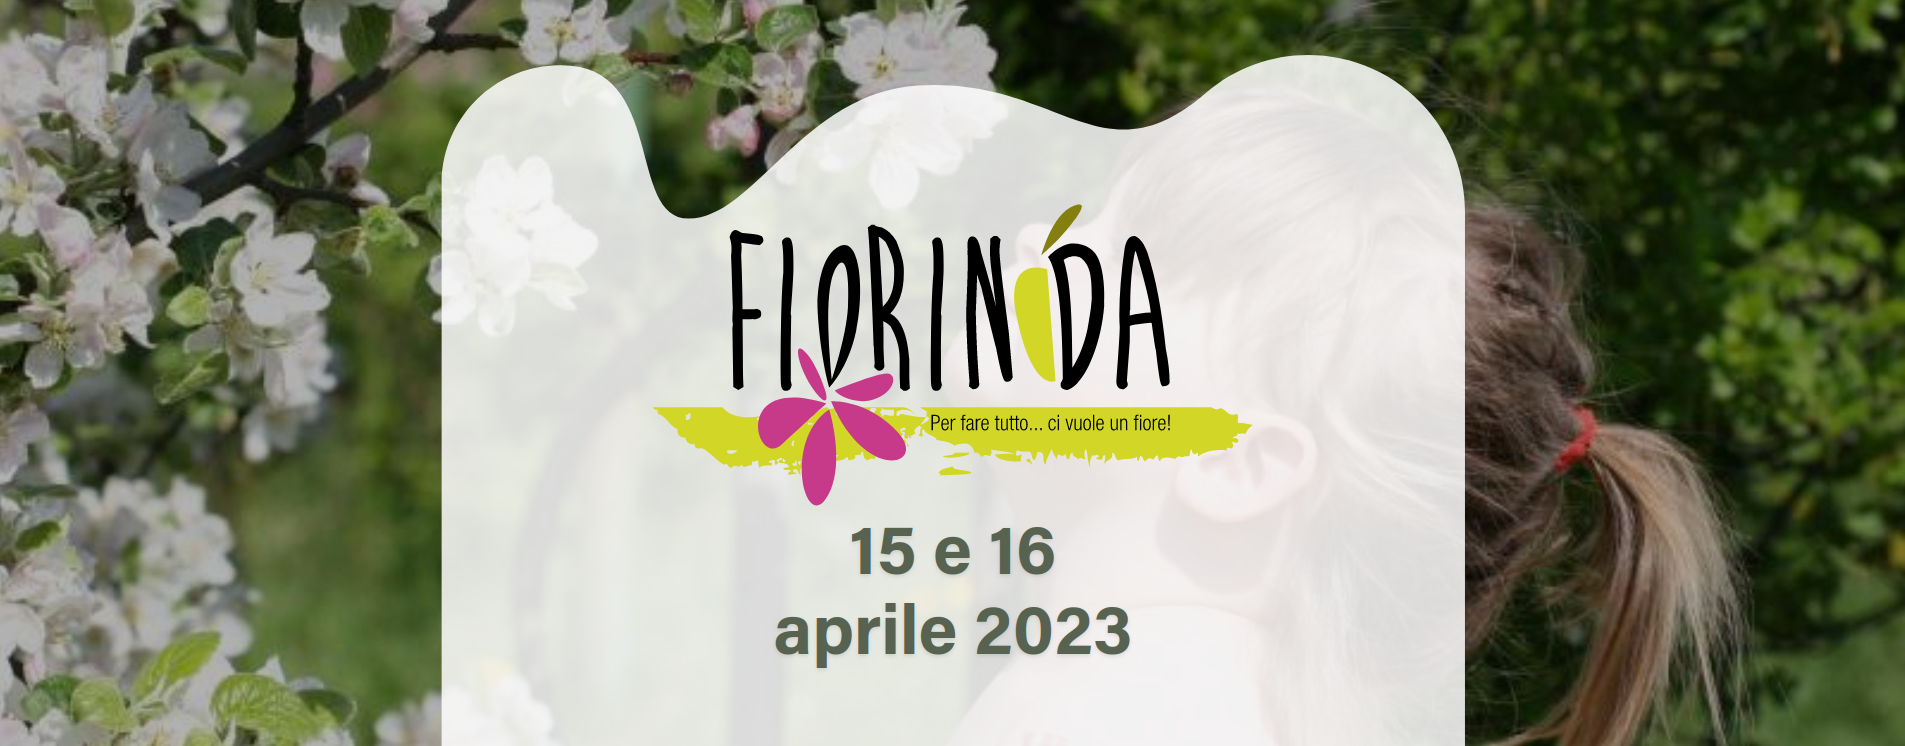 Fiorinda 2023